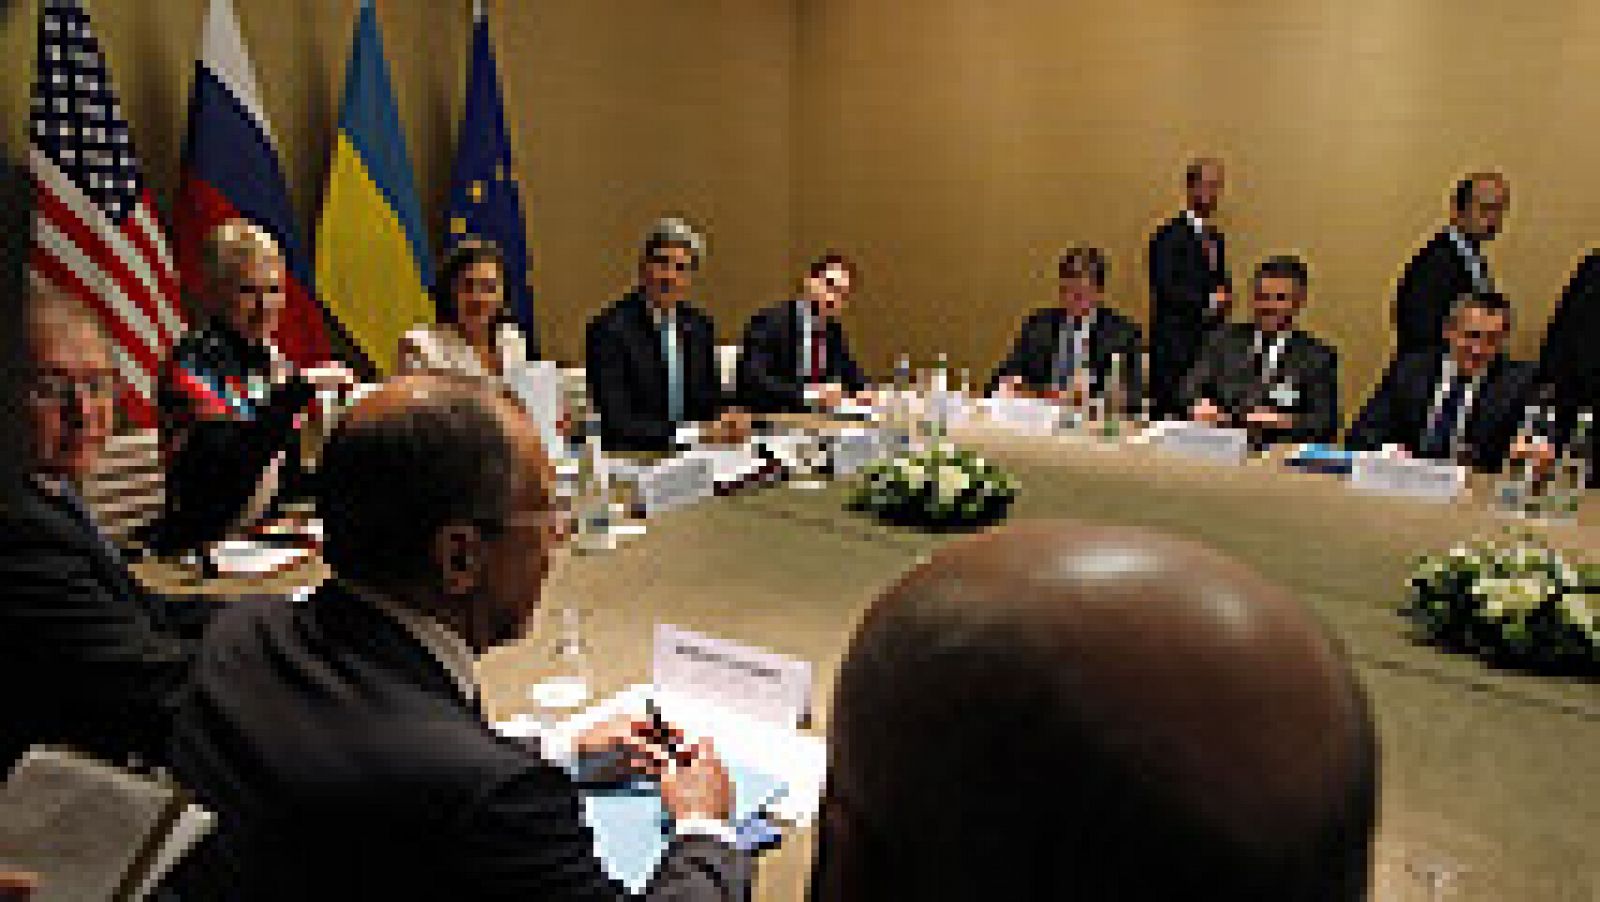  Los jefes de la diplomacia de Estados Unidos, John Kerry, y de Rusia, Serguei Lavrov, han negociado un documento que desean presentar al término de su reunión con sus homólogos de Ucrania y la Unión Europea con el fin de calmar la escalada de tensión en el este ucraniano.